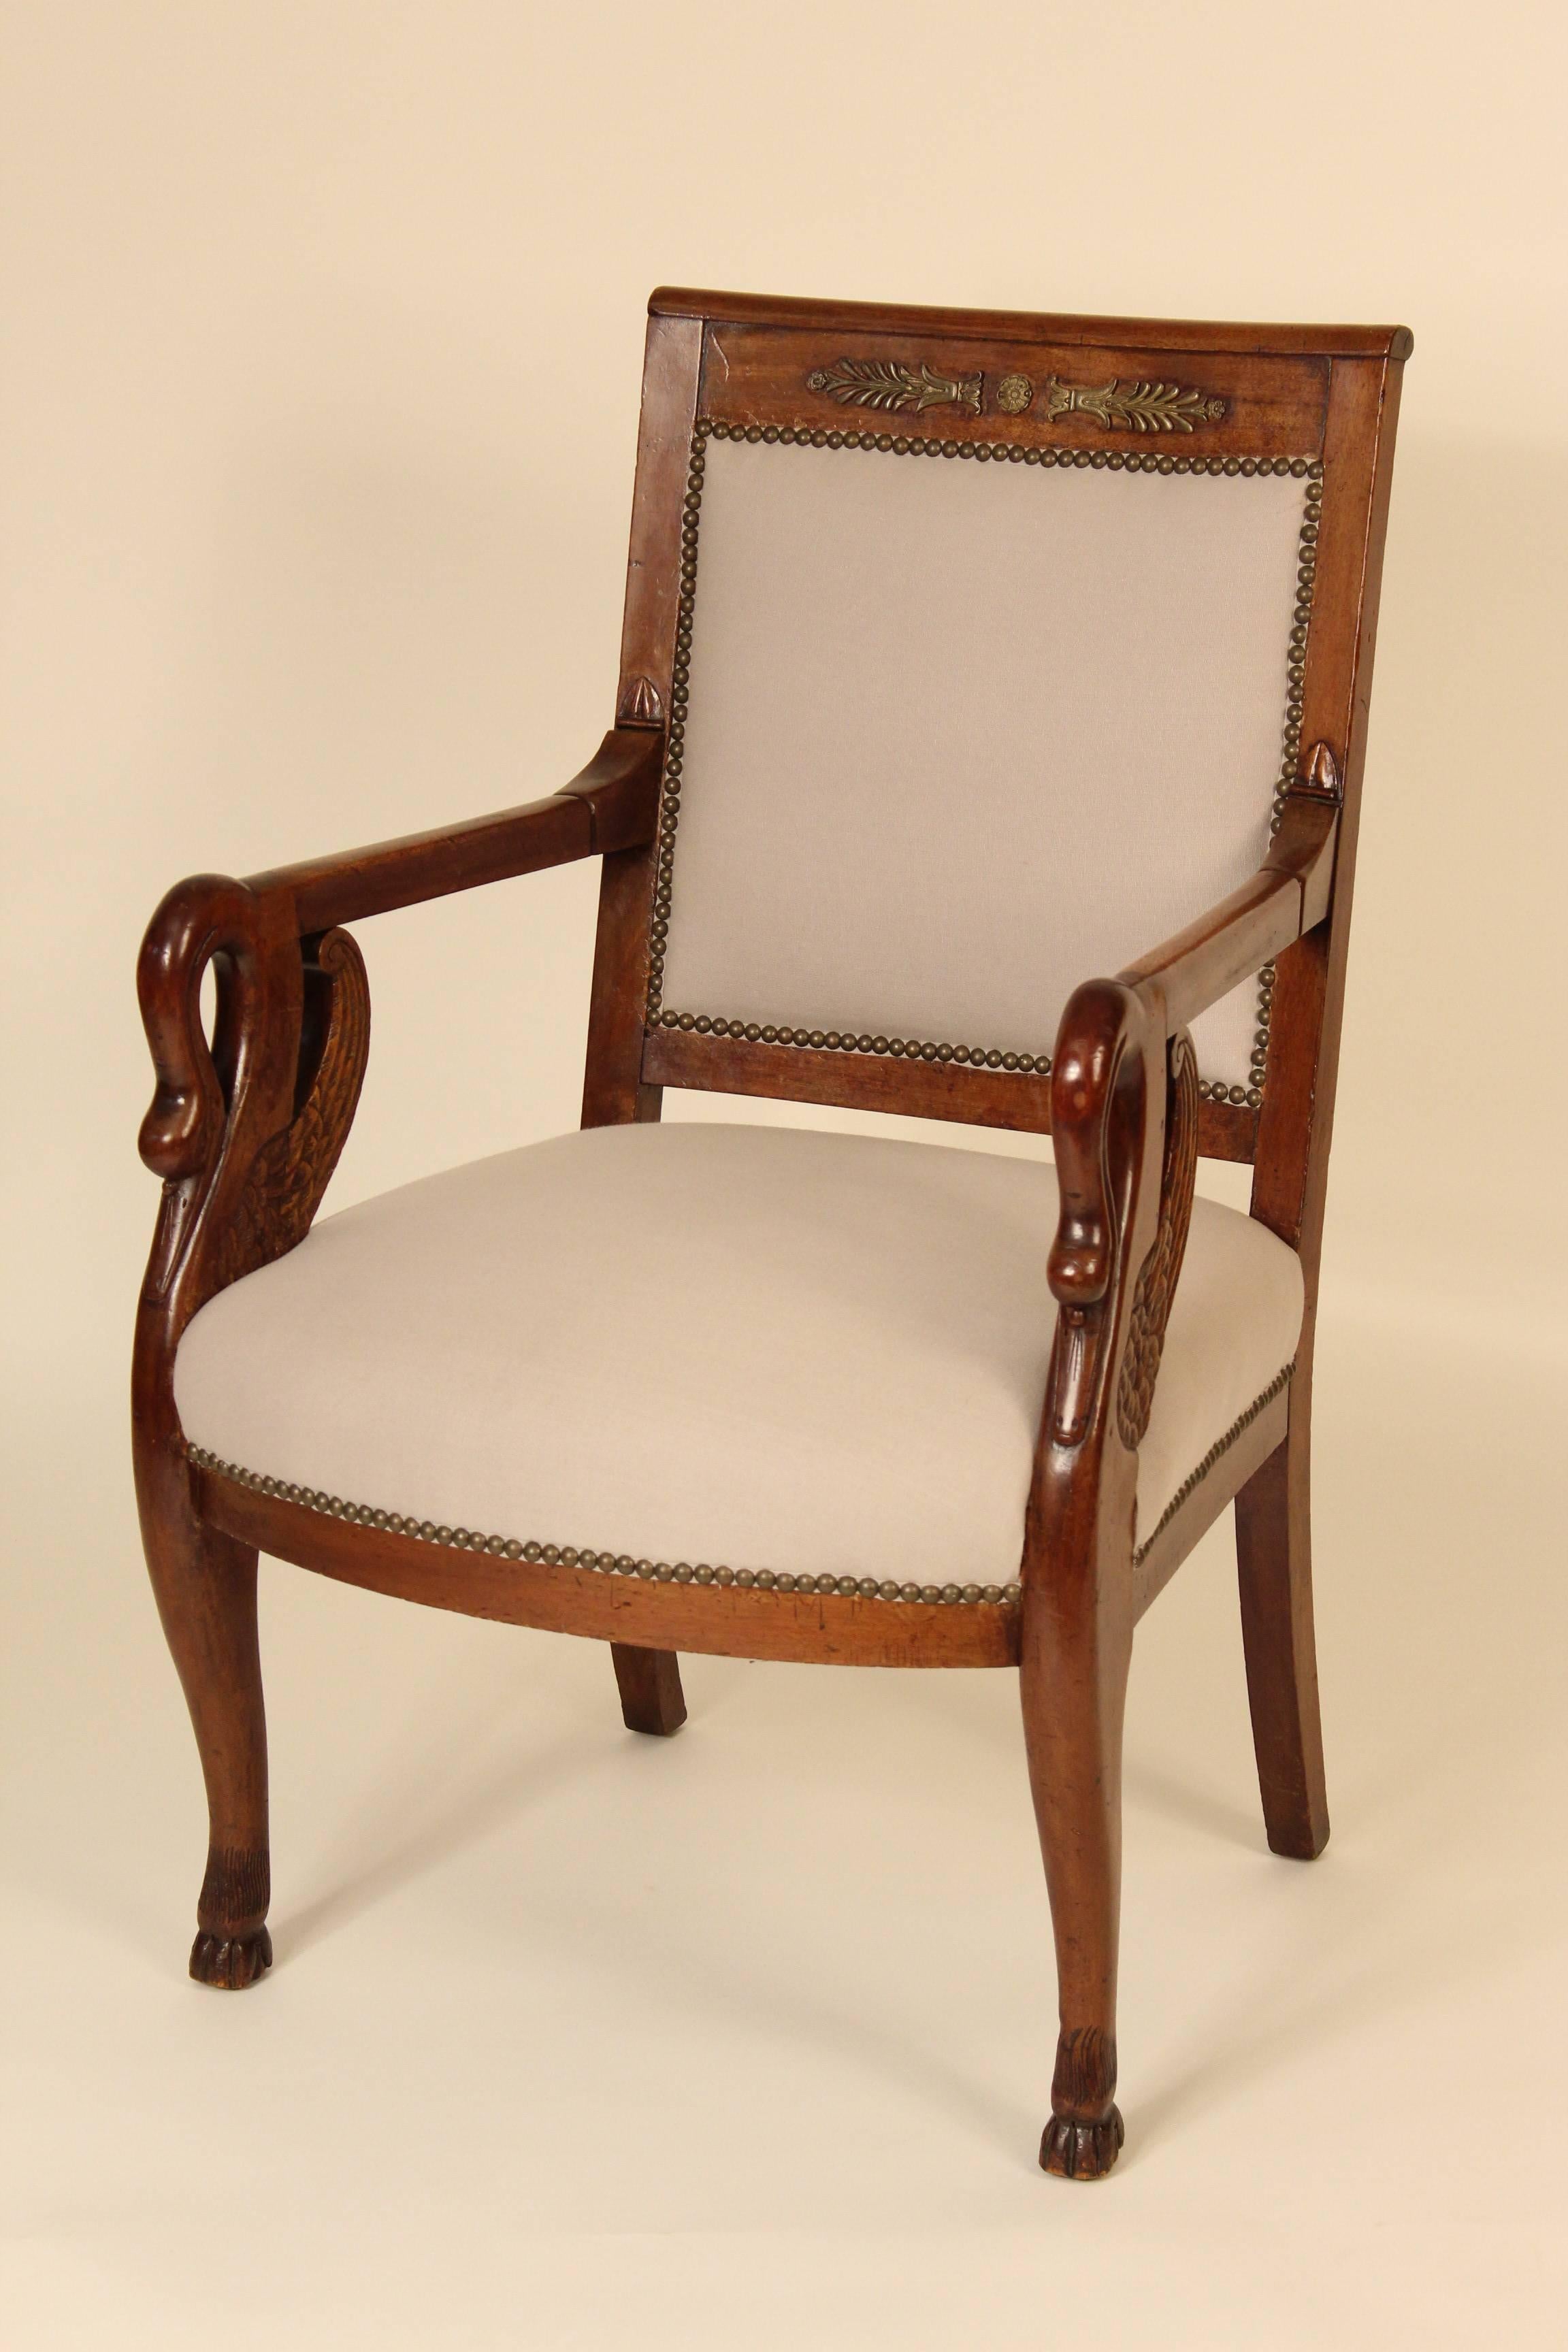 Paire de fauteuils de style Empire en acajou avec supports d'accoudoirs sculptés de cygnes et montures en bronze sur les cimaises, vers 1910. Les deux chaises ont été récemment rembourrées.